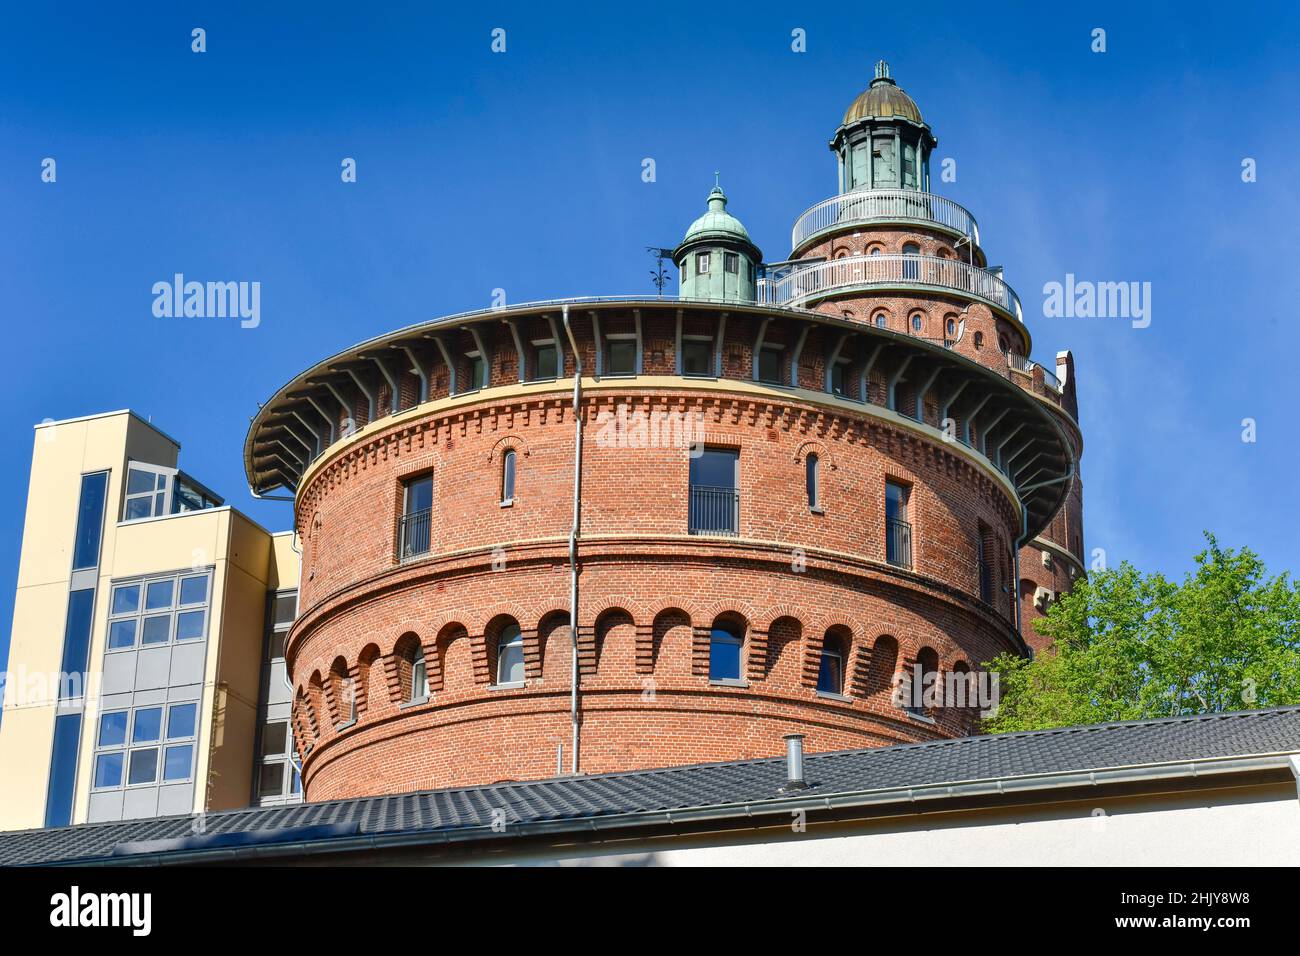 Wohnhaus, ehemaliger Wasserturm, Akazienallee, Westend, Charlottenburg, Berlin, Deutschland Stock Photo